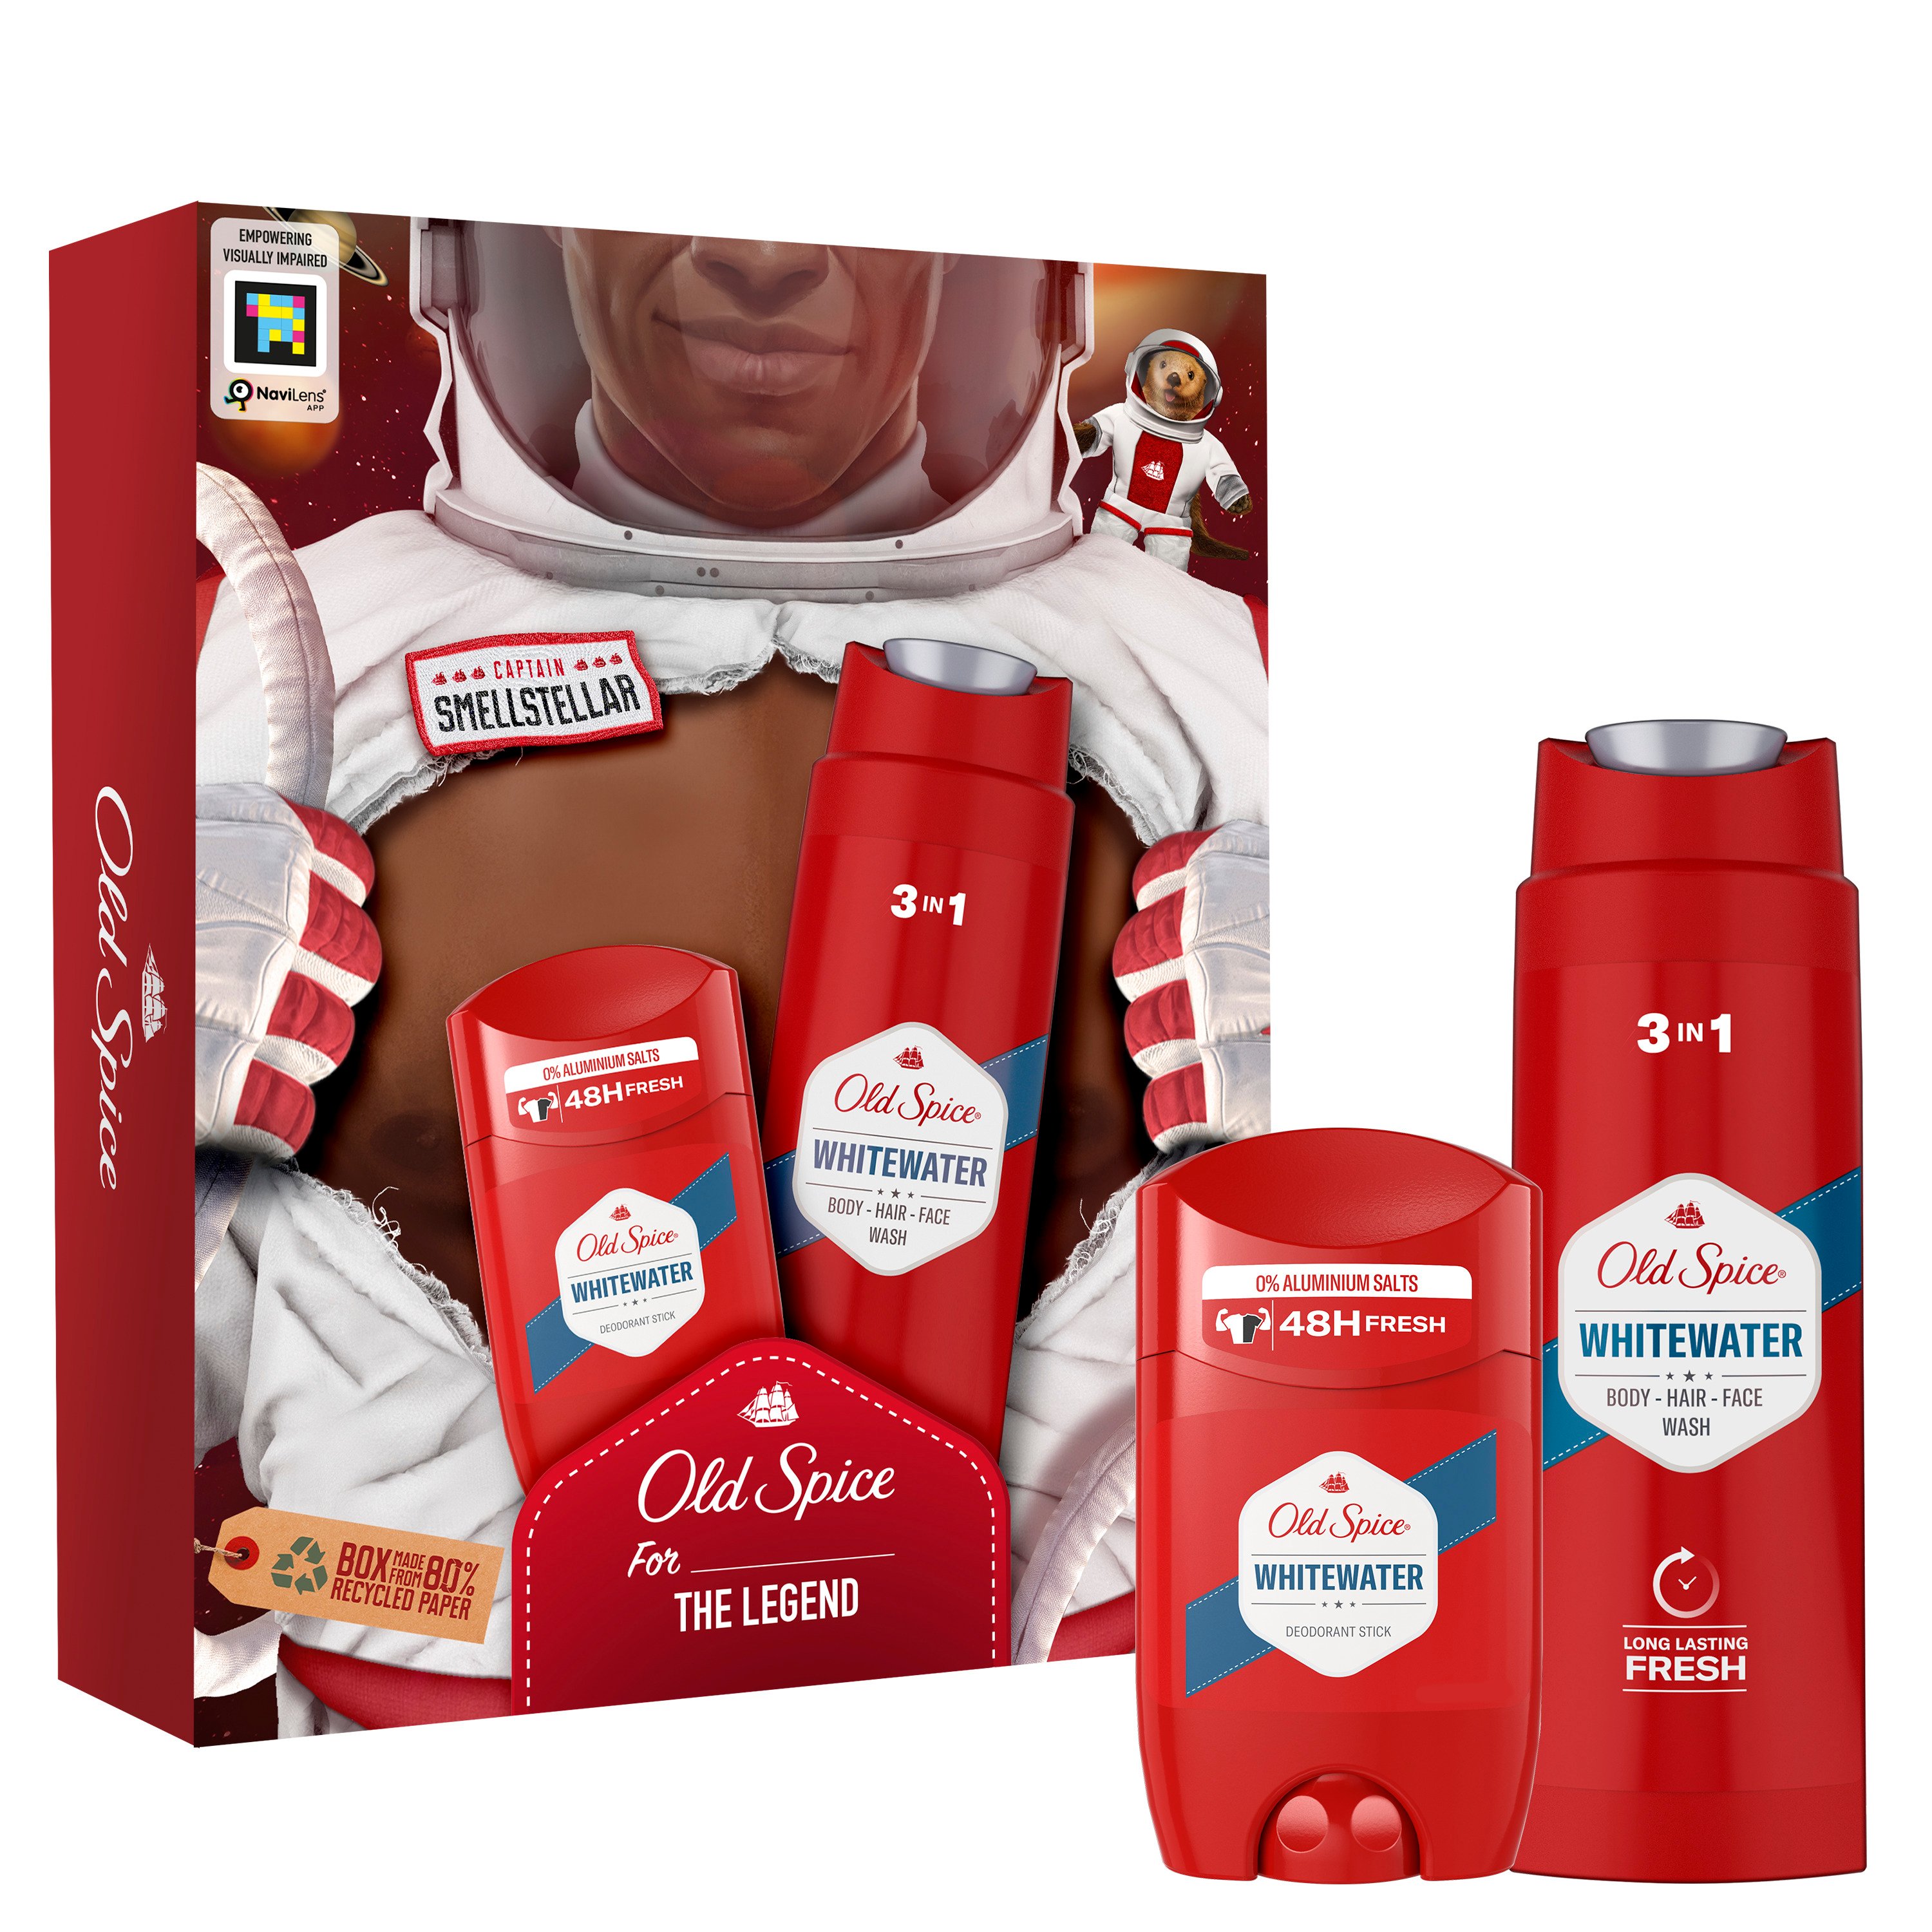 Подарунковий набір для чоловіків Old Spice Astronaut WhiteWater: твердий дезодорант 50 мл + гель для душу 3 в 1 250 мл - фото 1